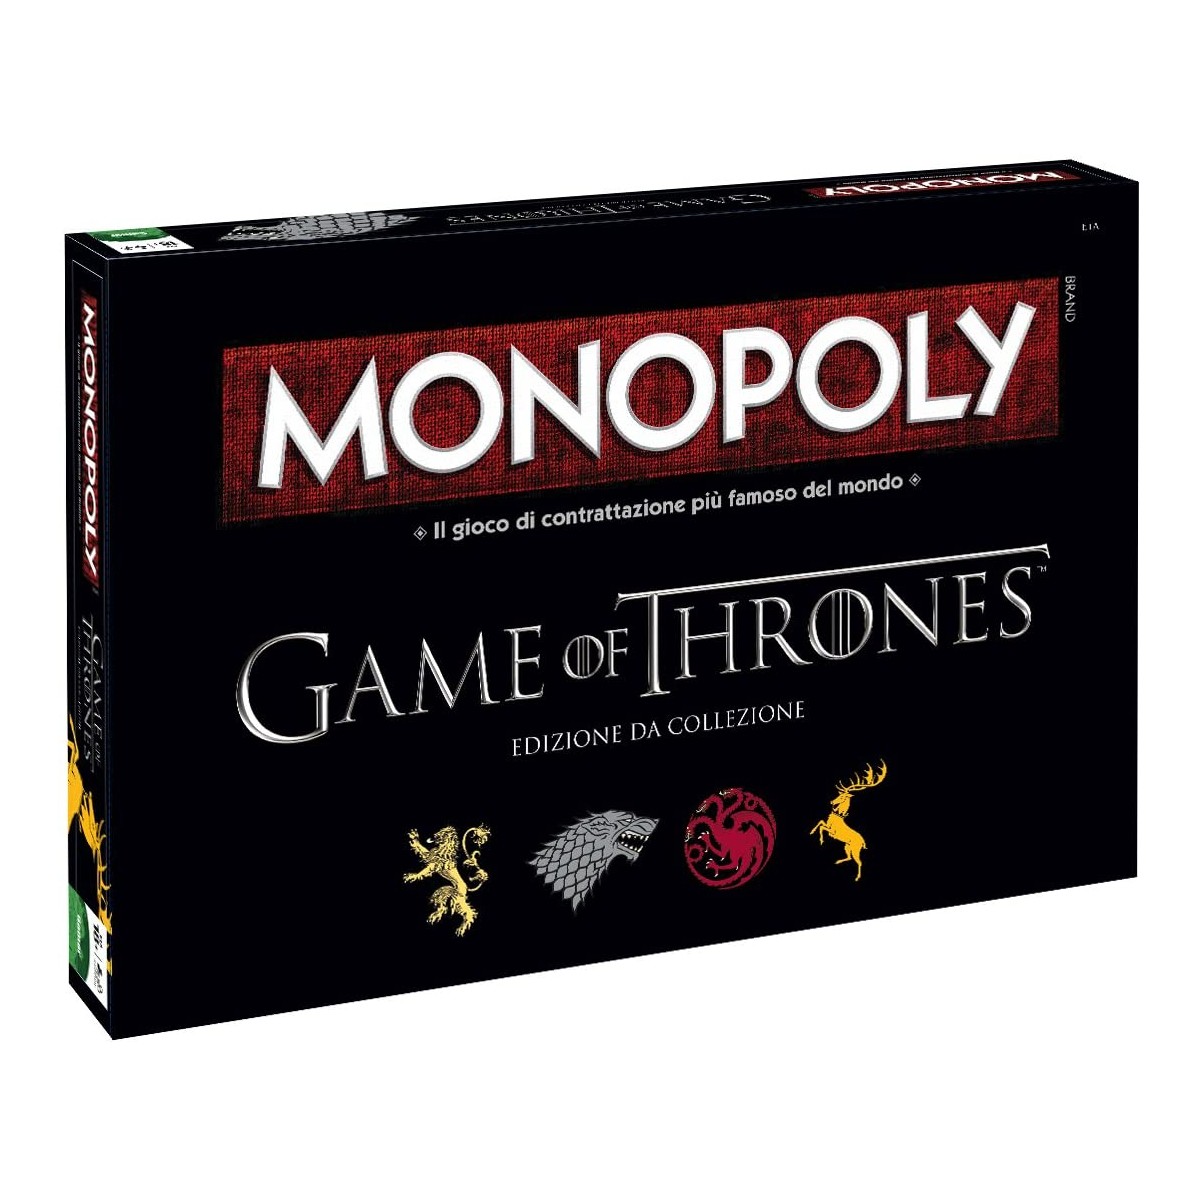 Monopoly Game of Thrones, versione Italiana, gioco da tavolo